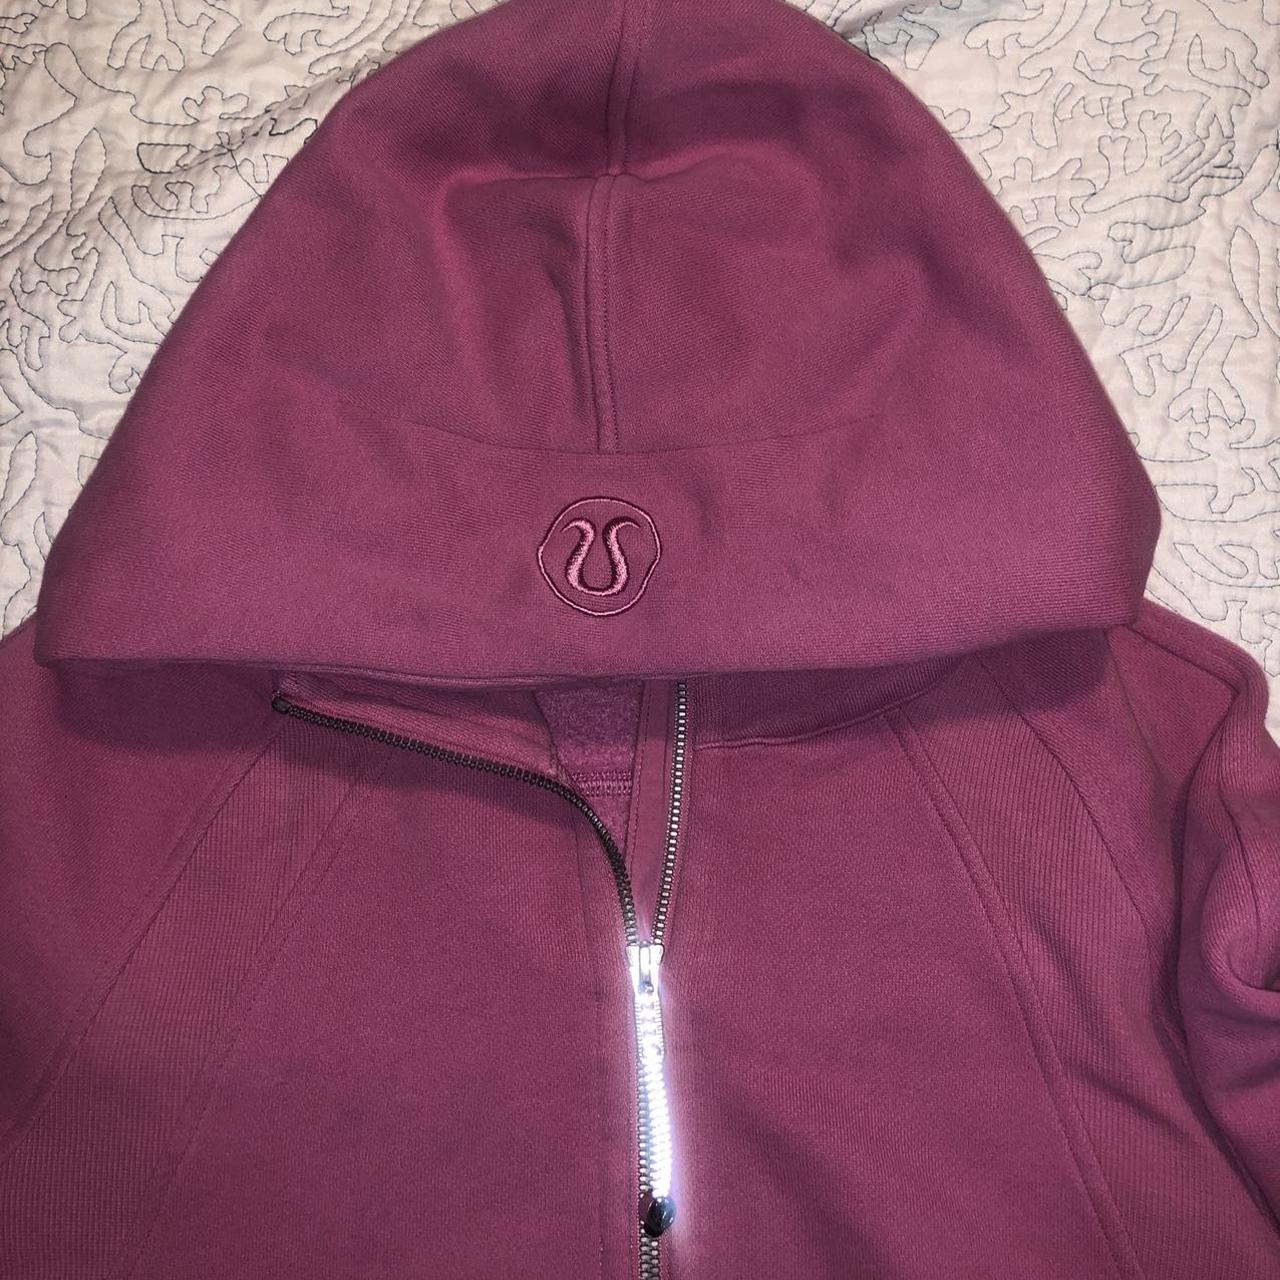 Lululemon women's hooded pullover quarter zip jacket Burgundy Size 6